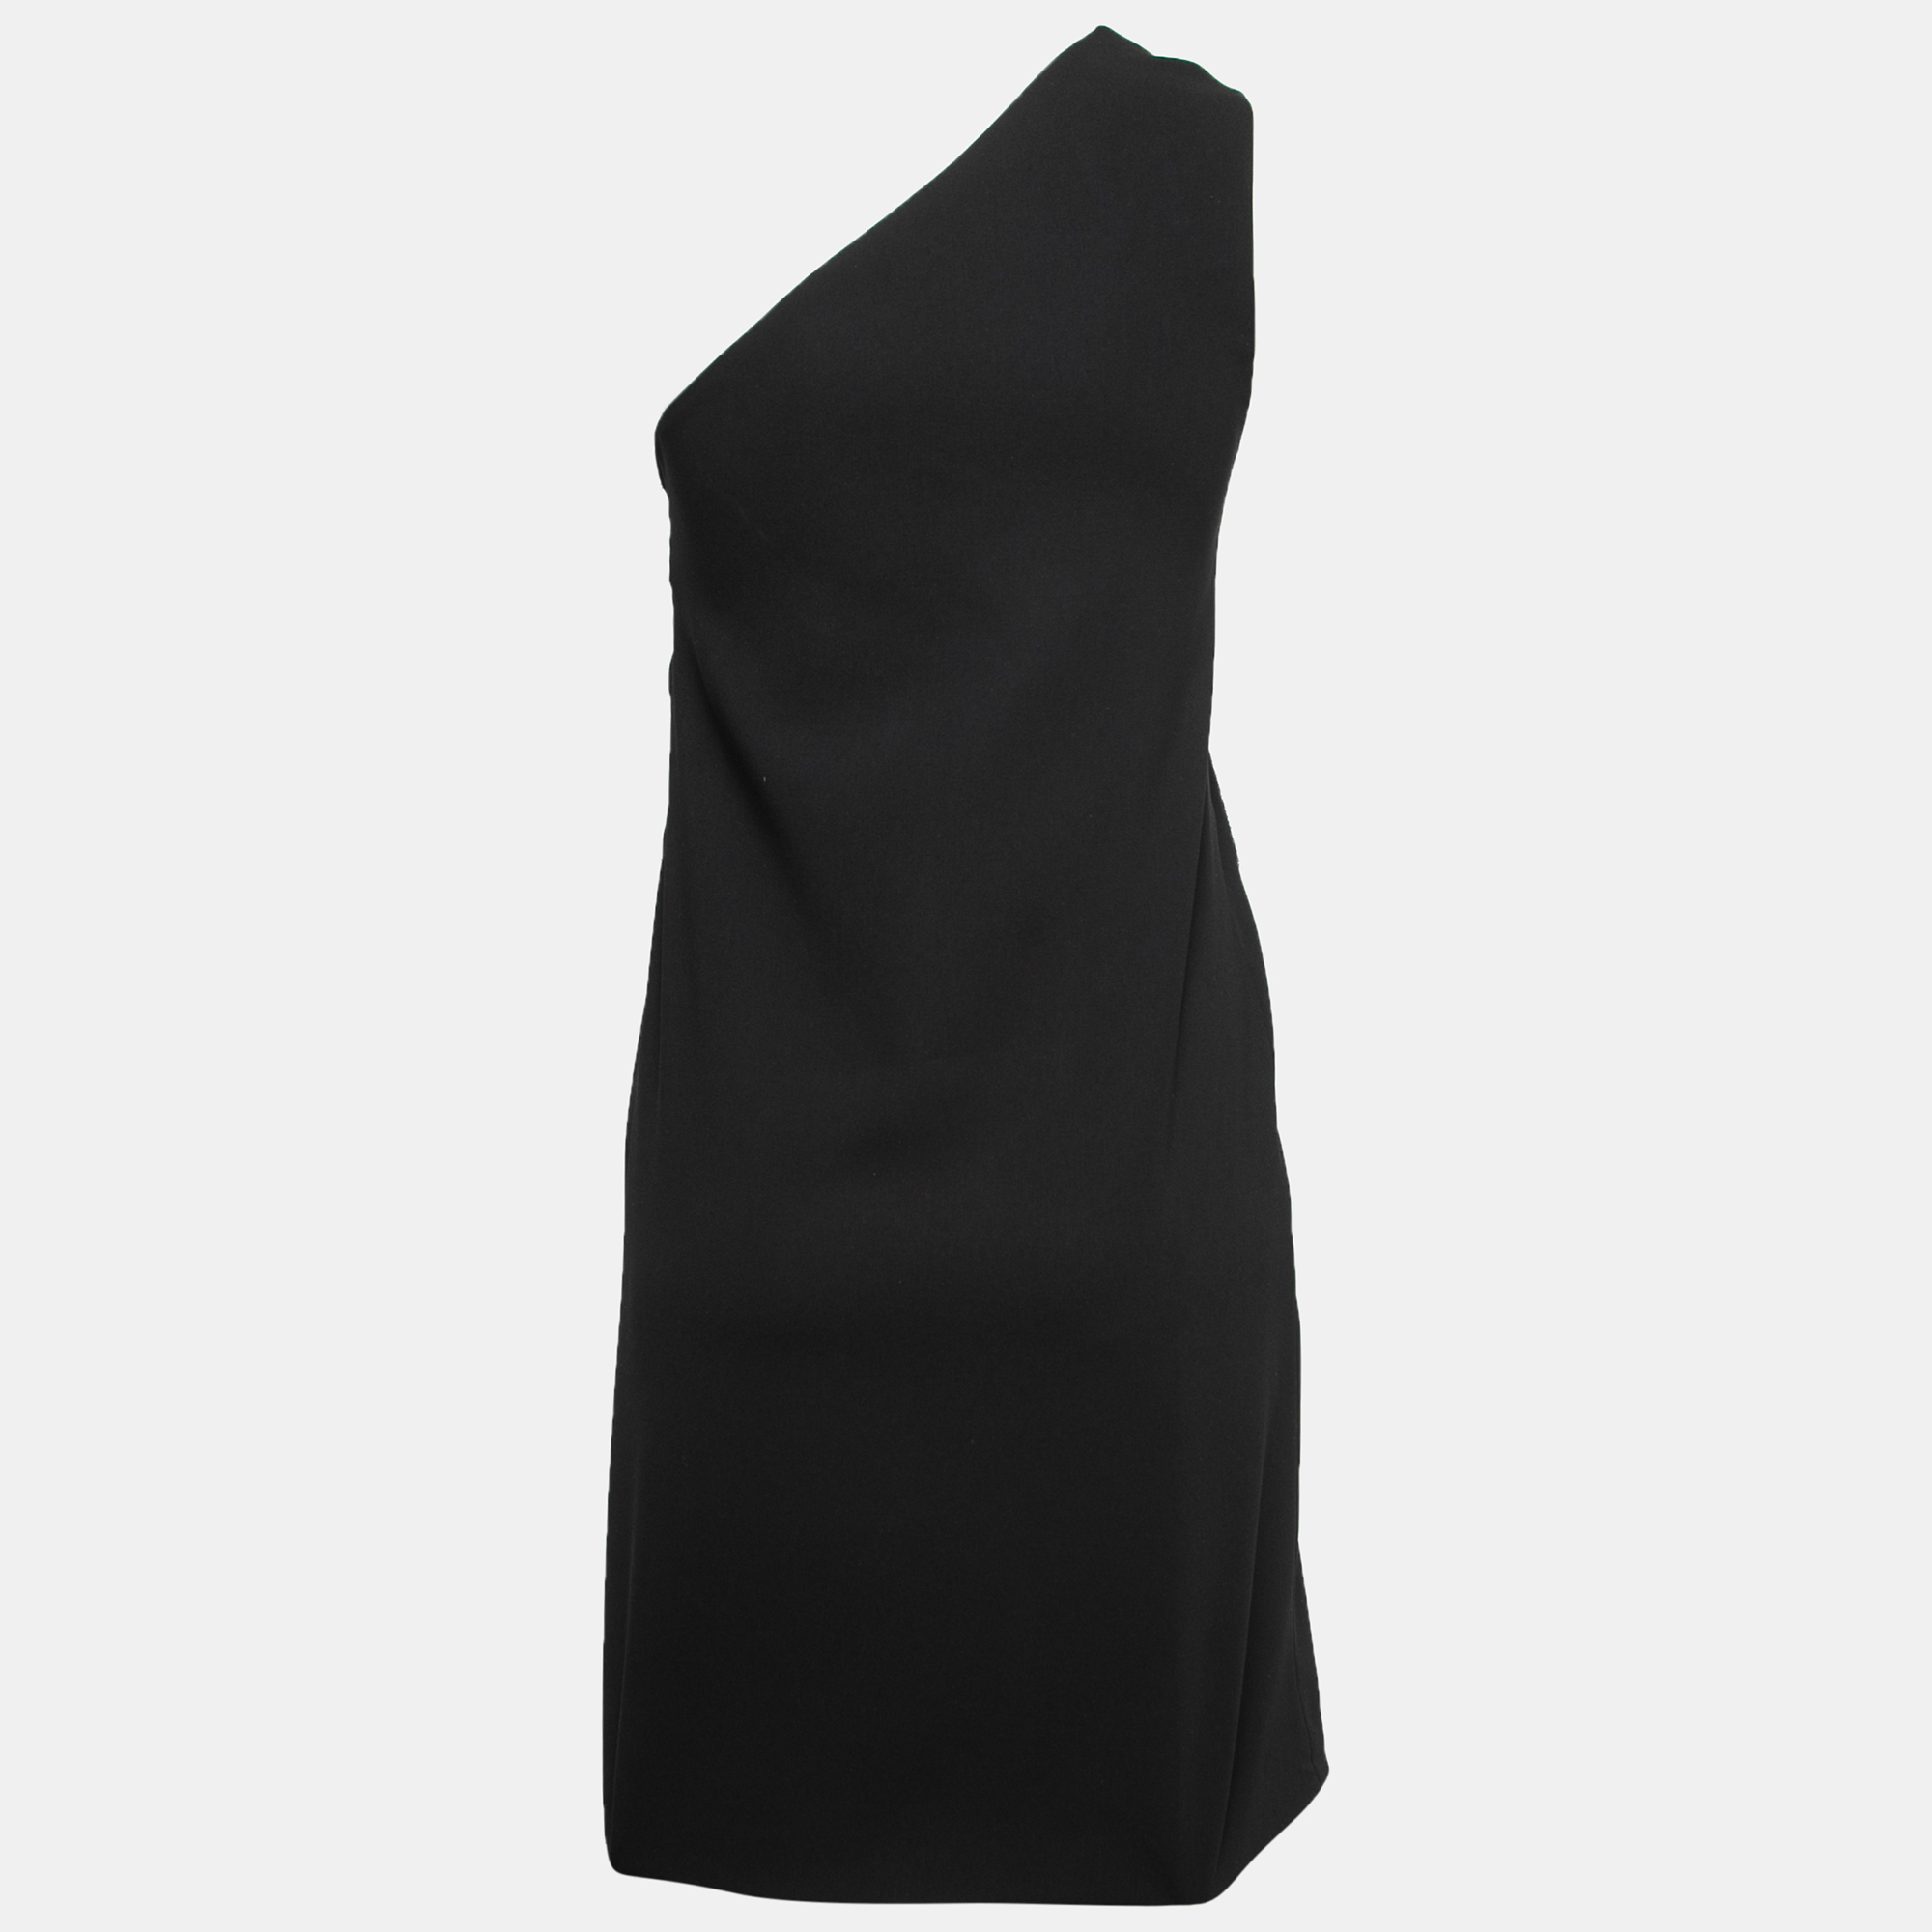 

Victoria Victoria Beckham Black Crepe Embellished One-Shoulder Dress